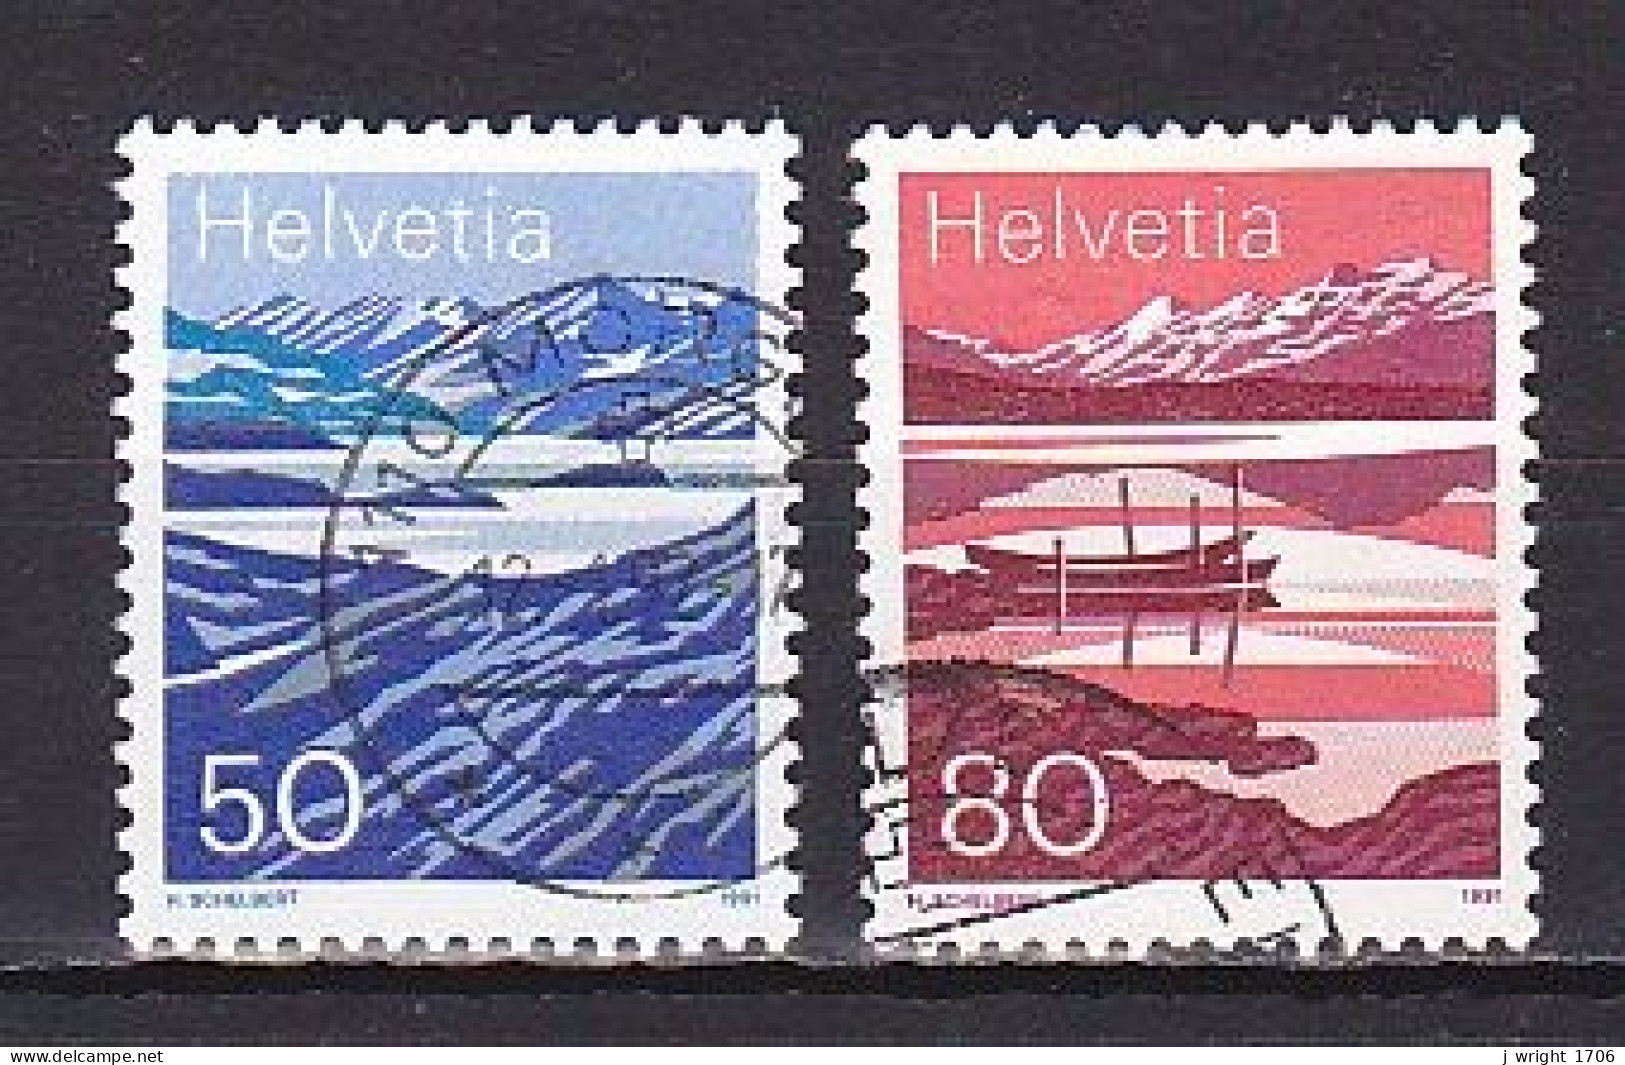 Switzerland, 1991, Lake Moesola & Melchsee, 50c & 80c, USED - Gebruikt